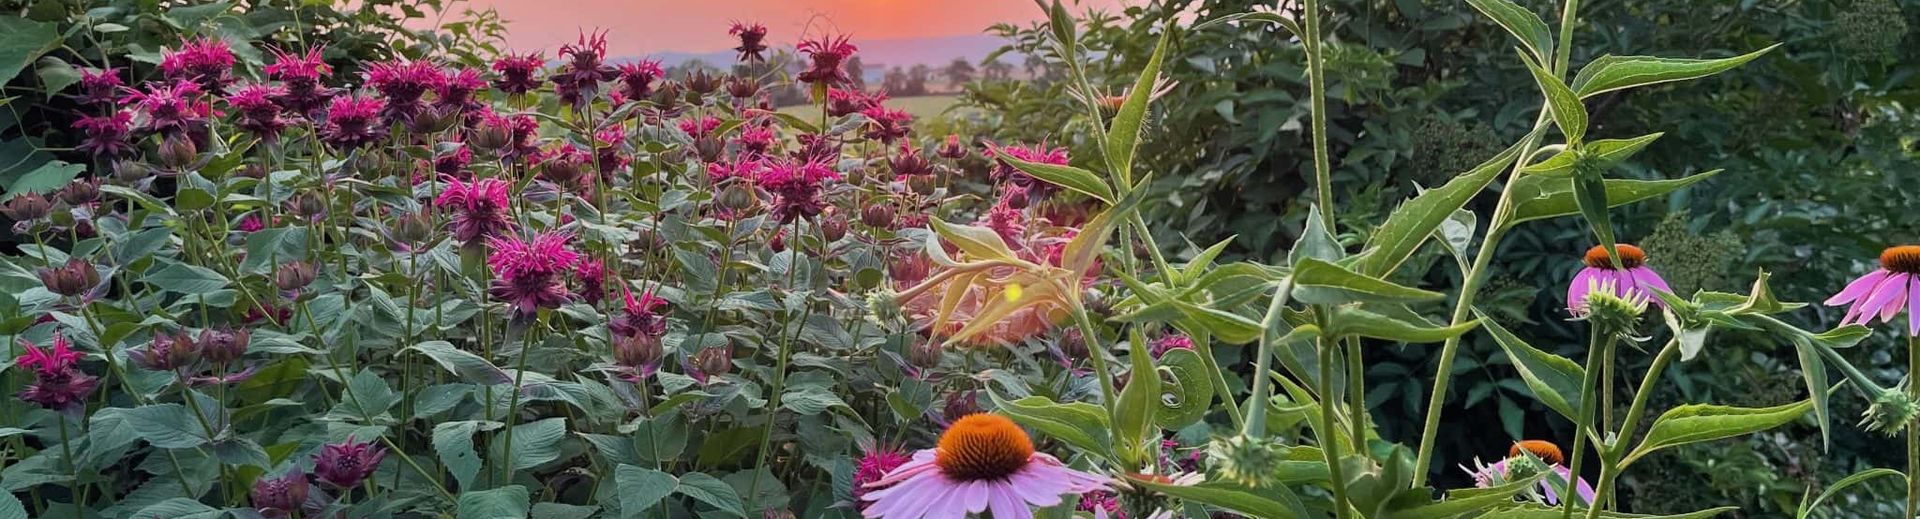 Flower garden in summer bloom with sunset beyond